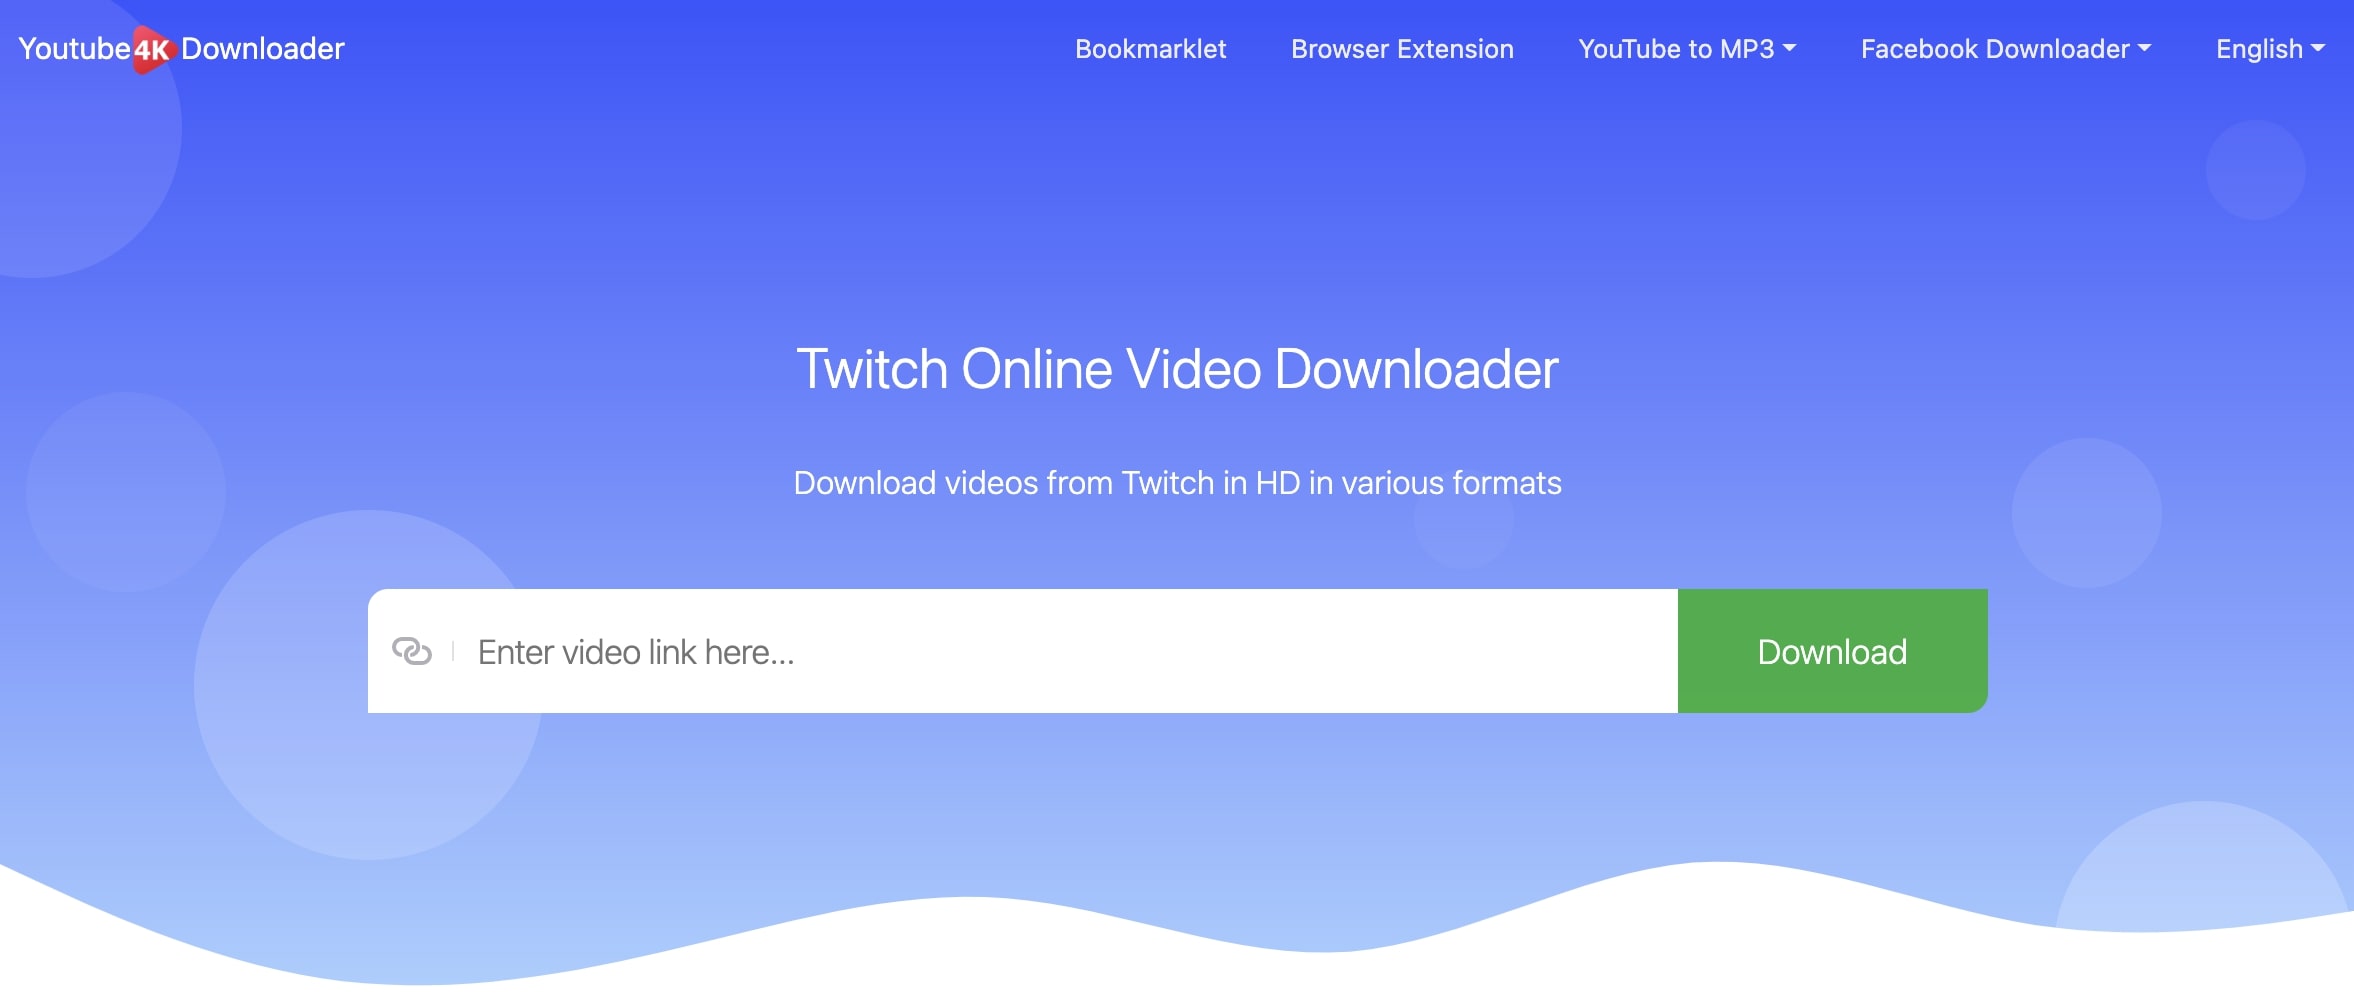  Twitch-highlight-downloader-YouTube4kdownloader  